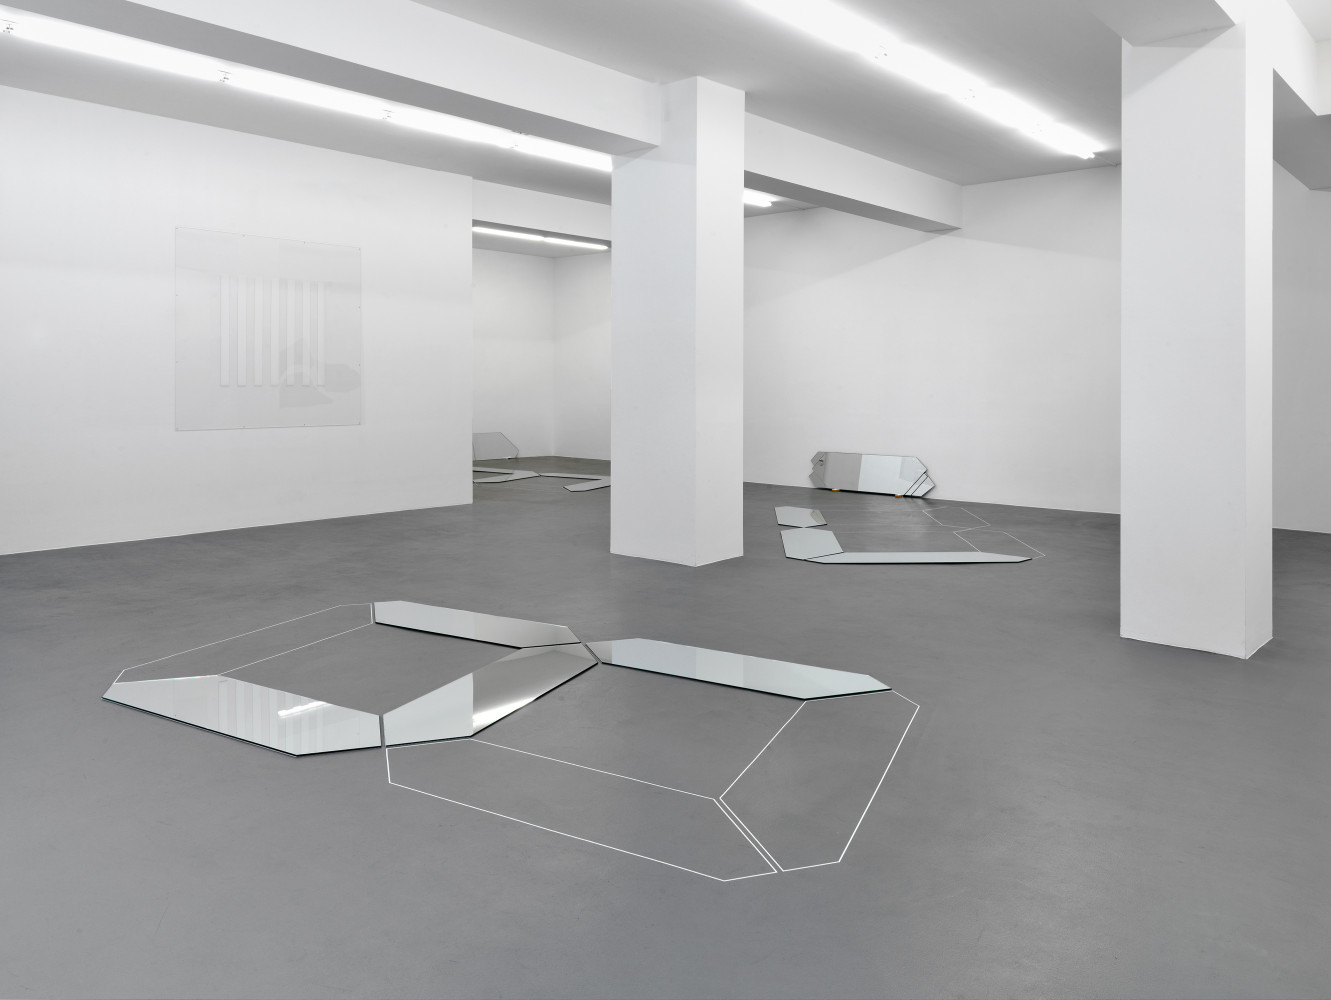 Installation view, Buchmann Galerie, 2012